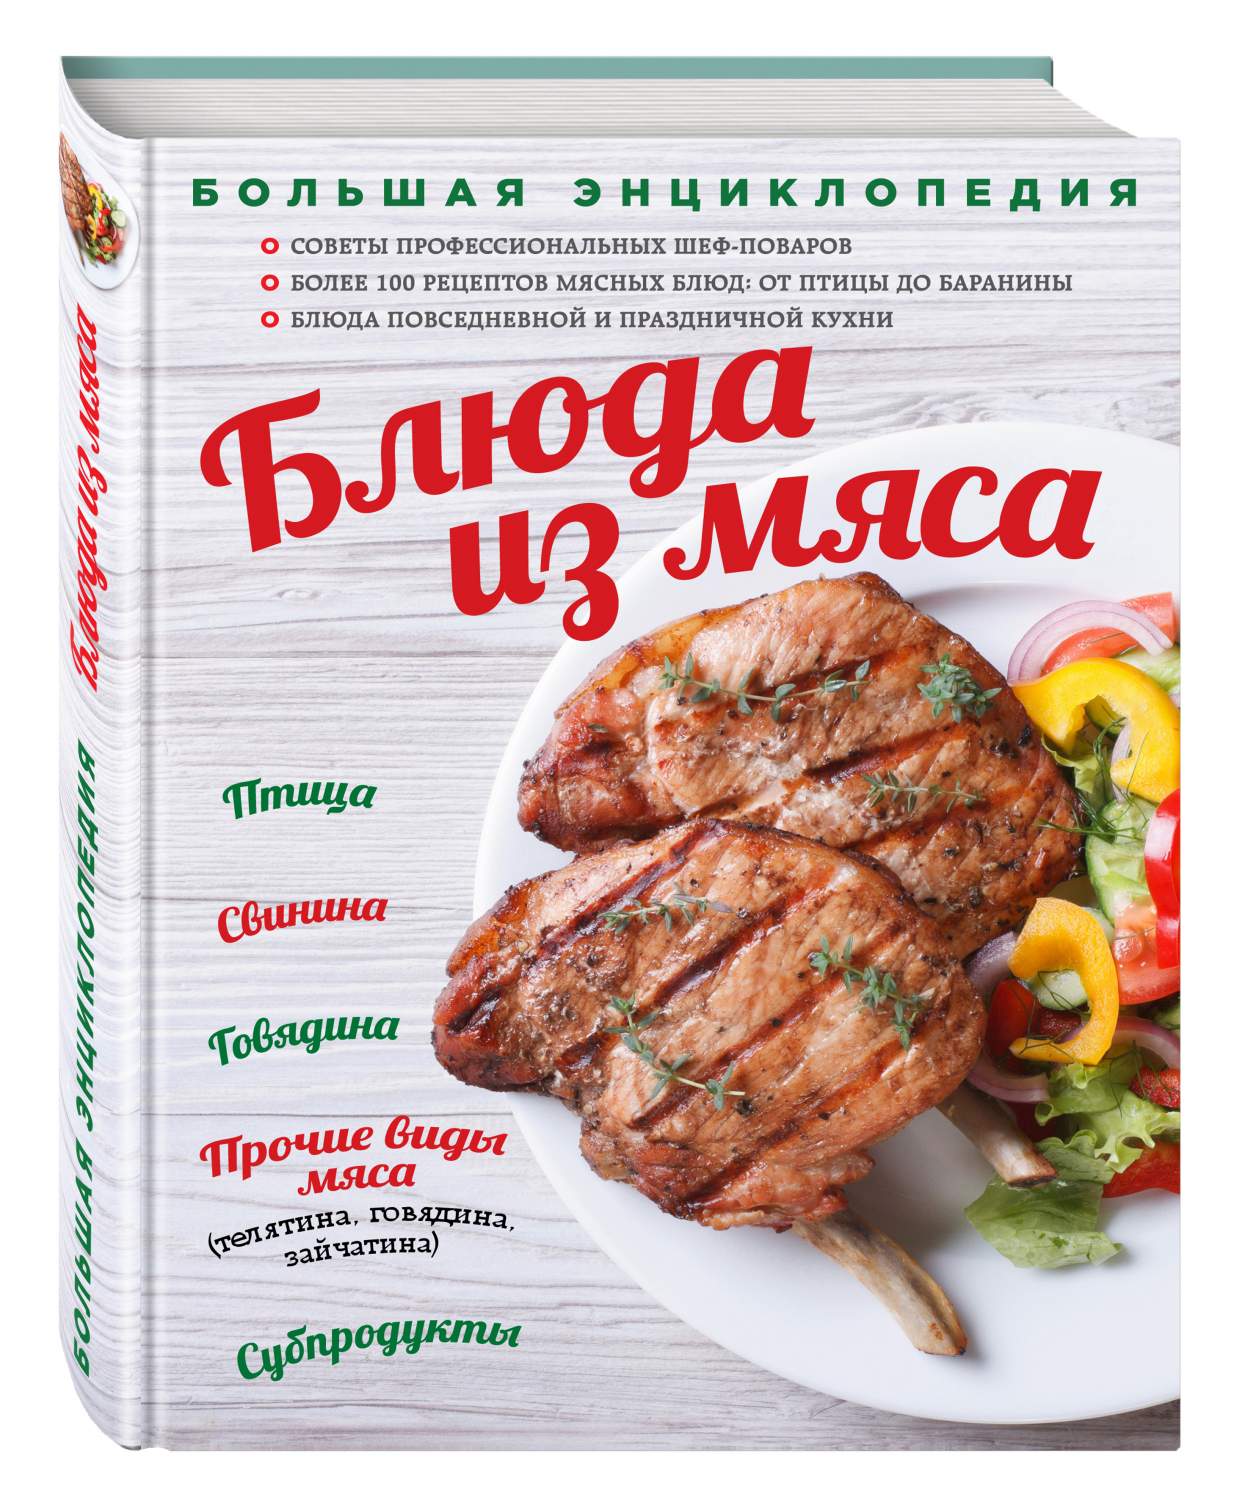 Лучшие рецепты мясных блюд от иркутских шеф-поваров. Как вкусно поздравить с 23 февраля